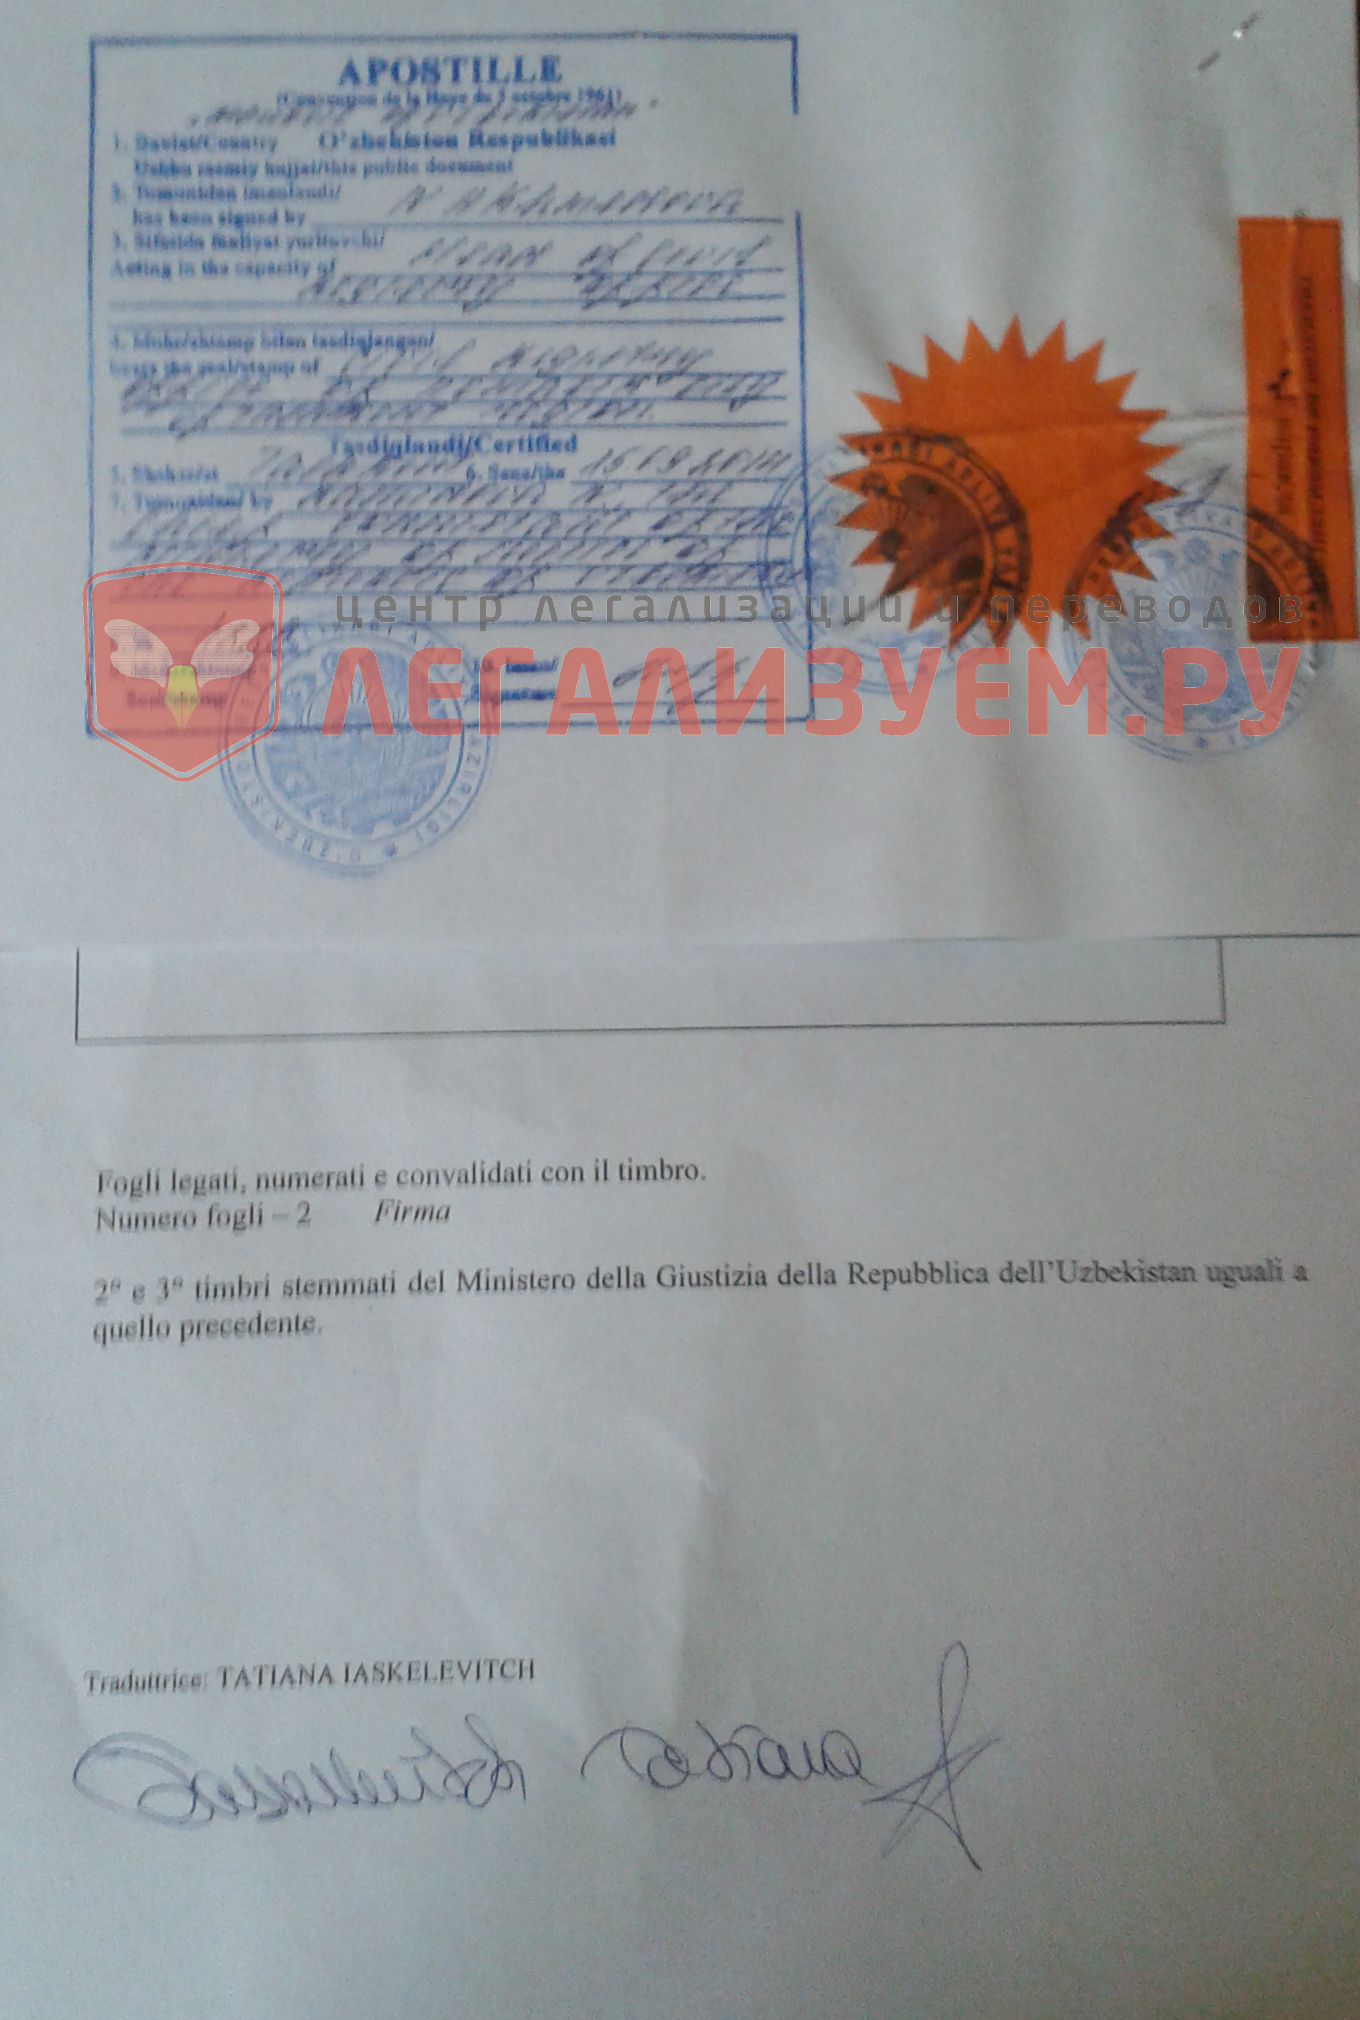 удостоверение перевода в Посольстве Италии в Ташкенте